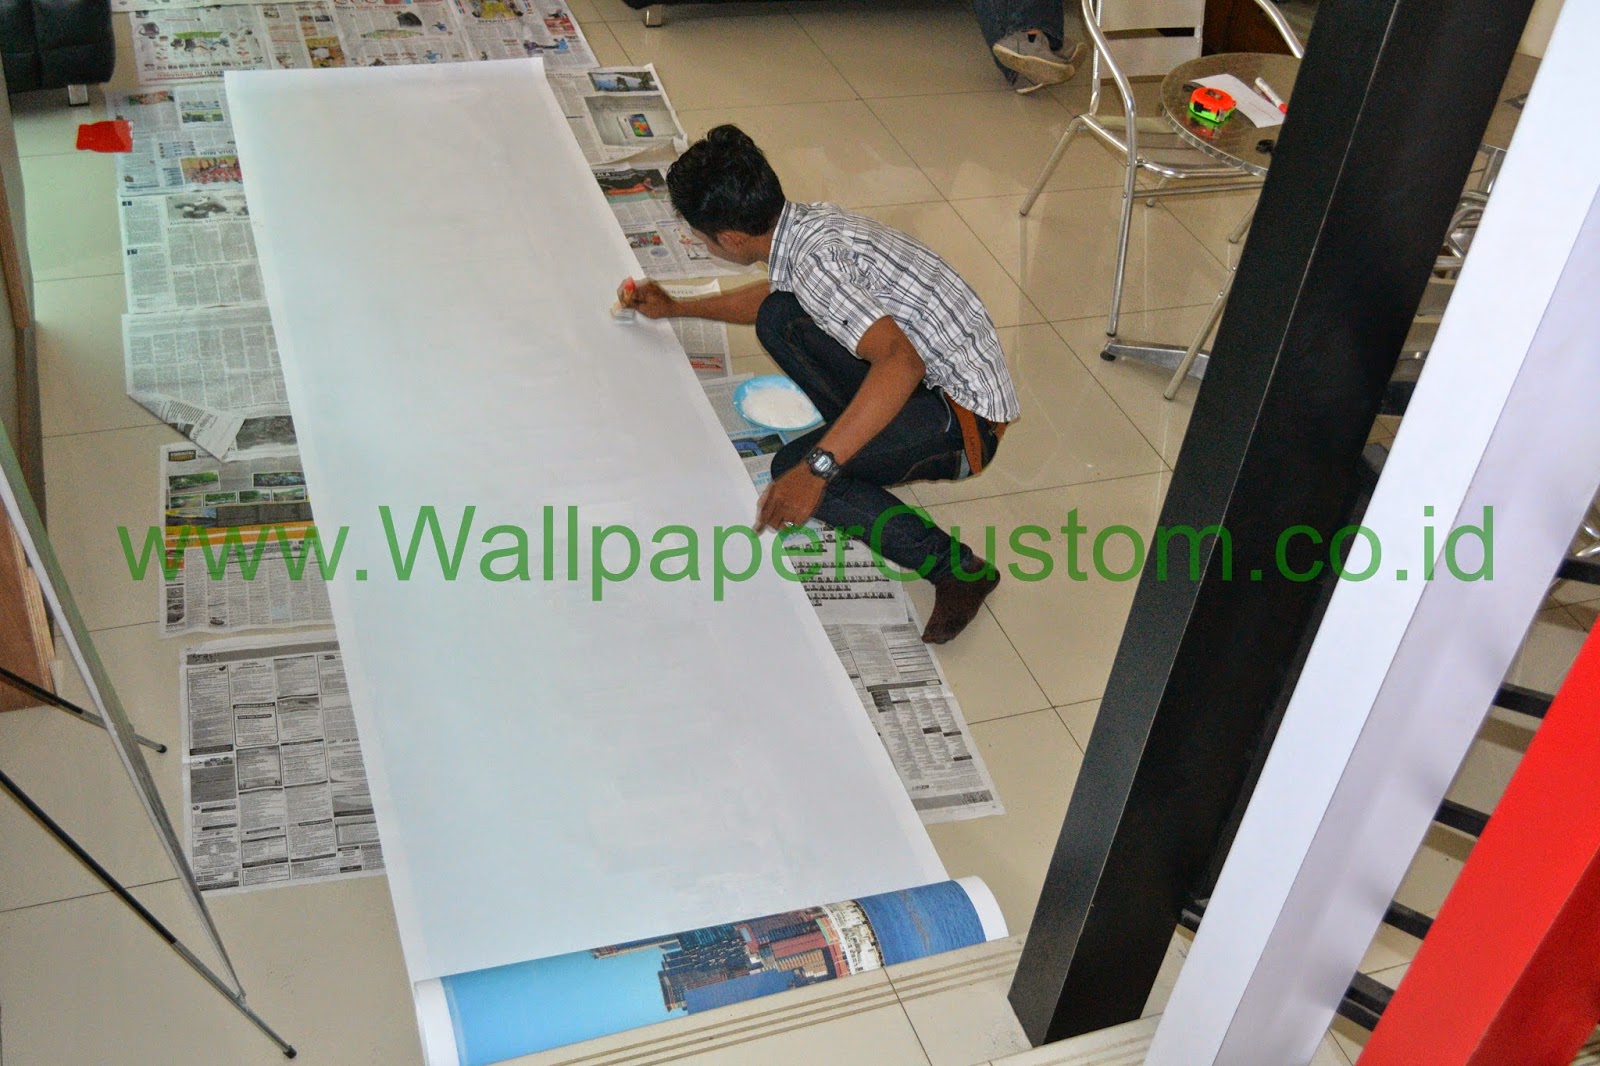 Jual Wallpaper Dinding 3d Jakarta Jual Wallpaper Dinding 3d Pelangi